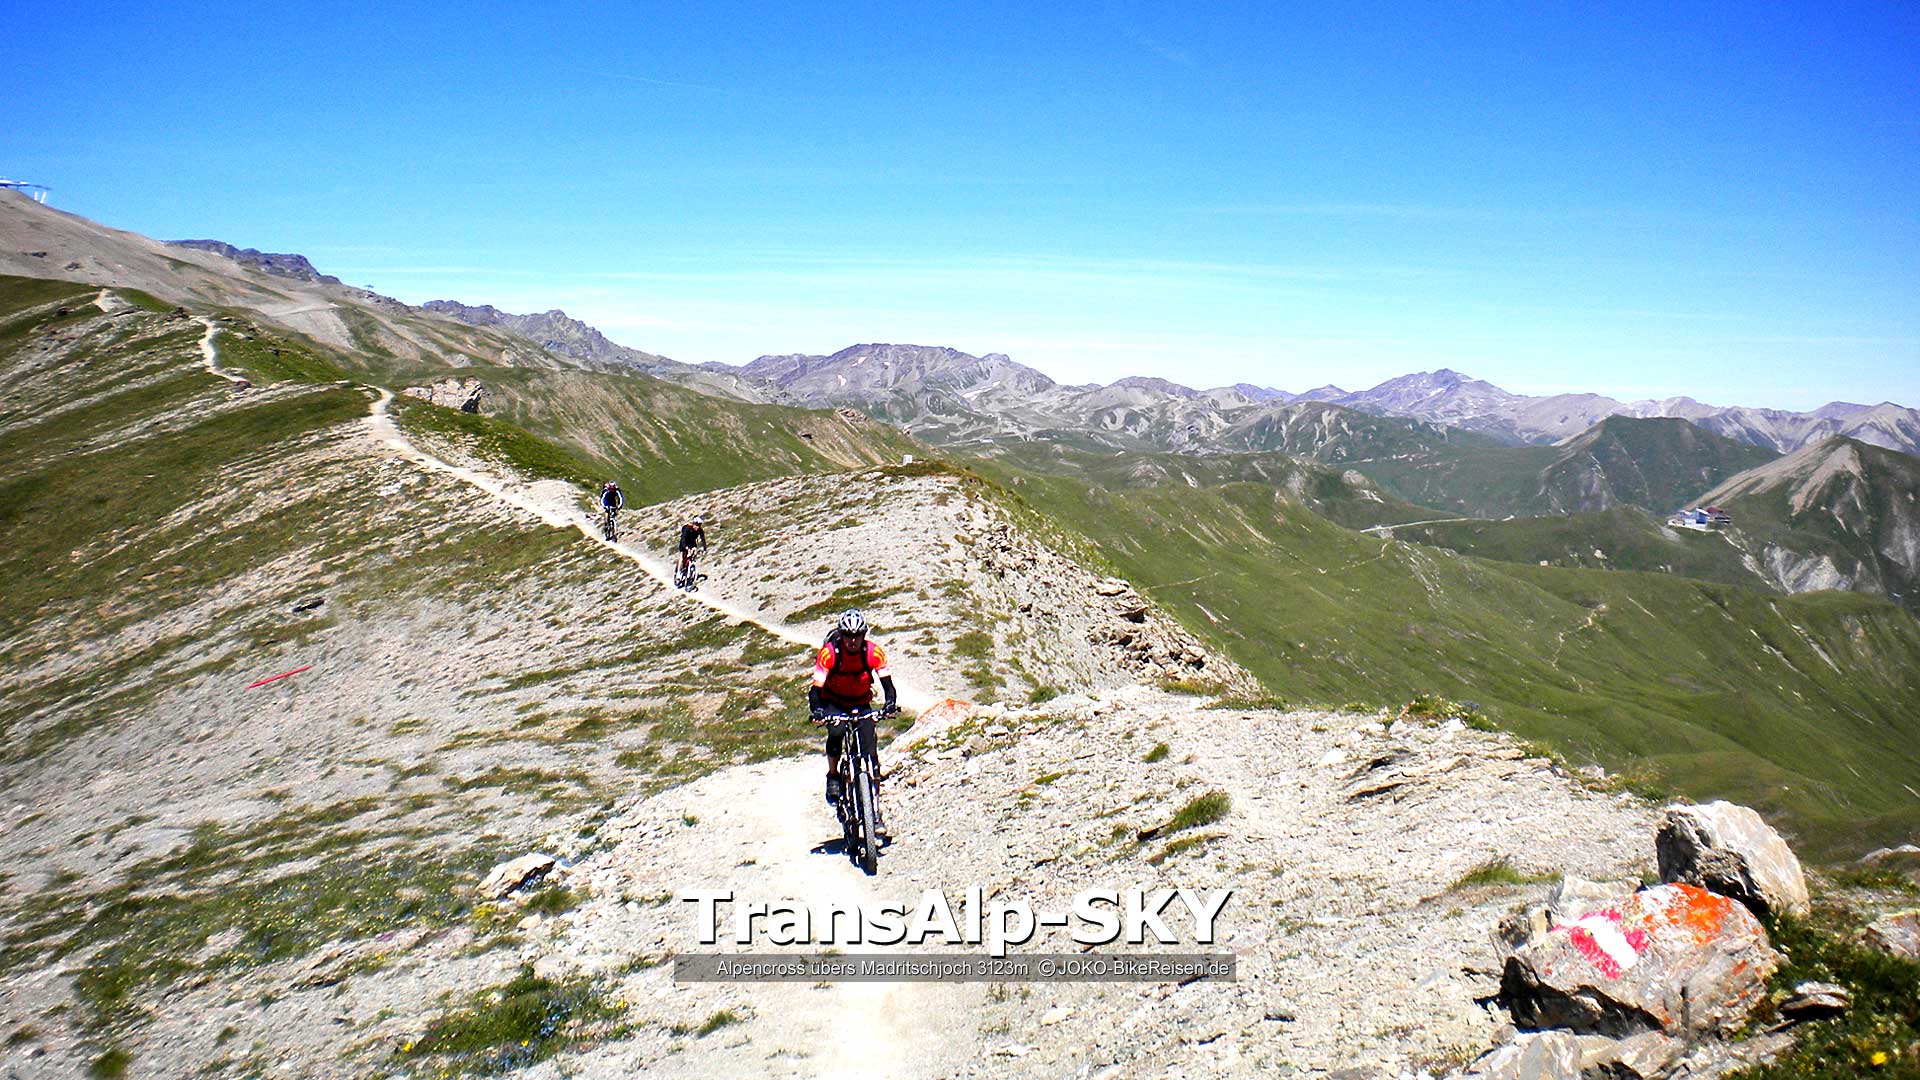 Mountainbike-Alpenüberquerung übers Madrischjoch, durch spektakuläre Uina-Schlucht zum Gardasee/Riva